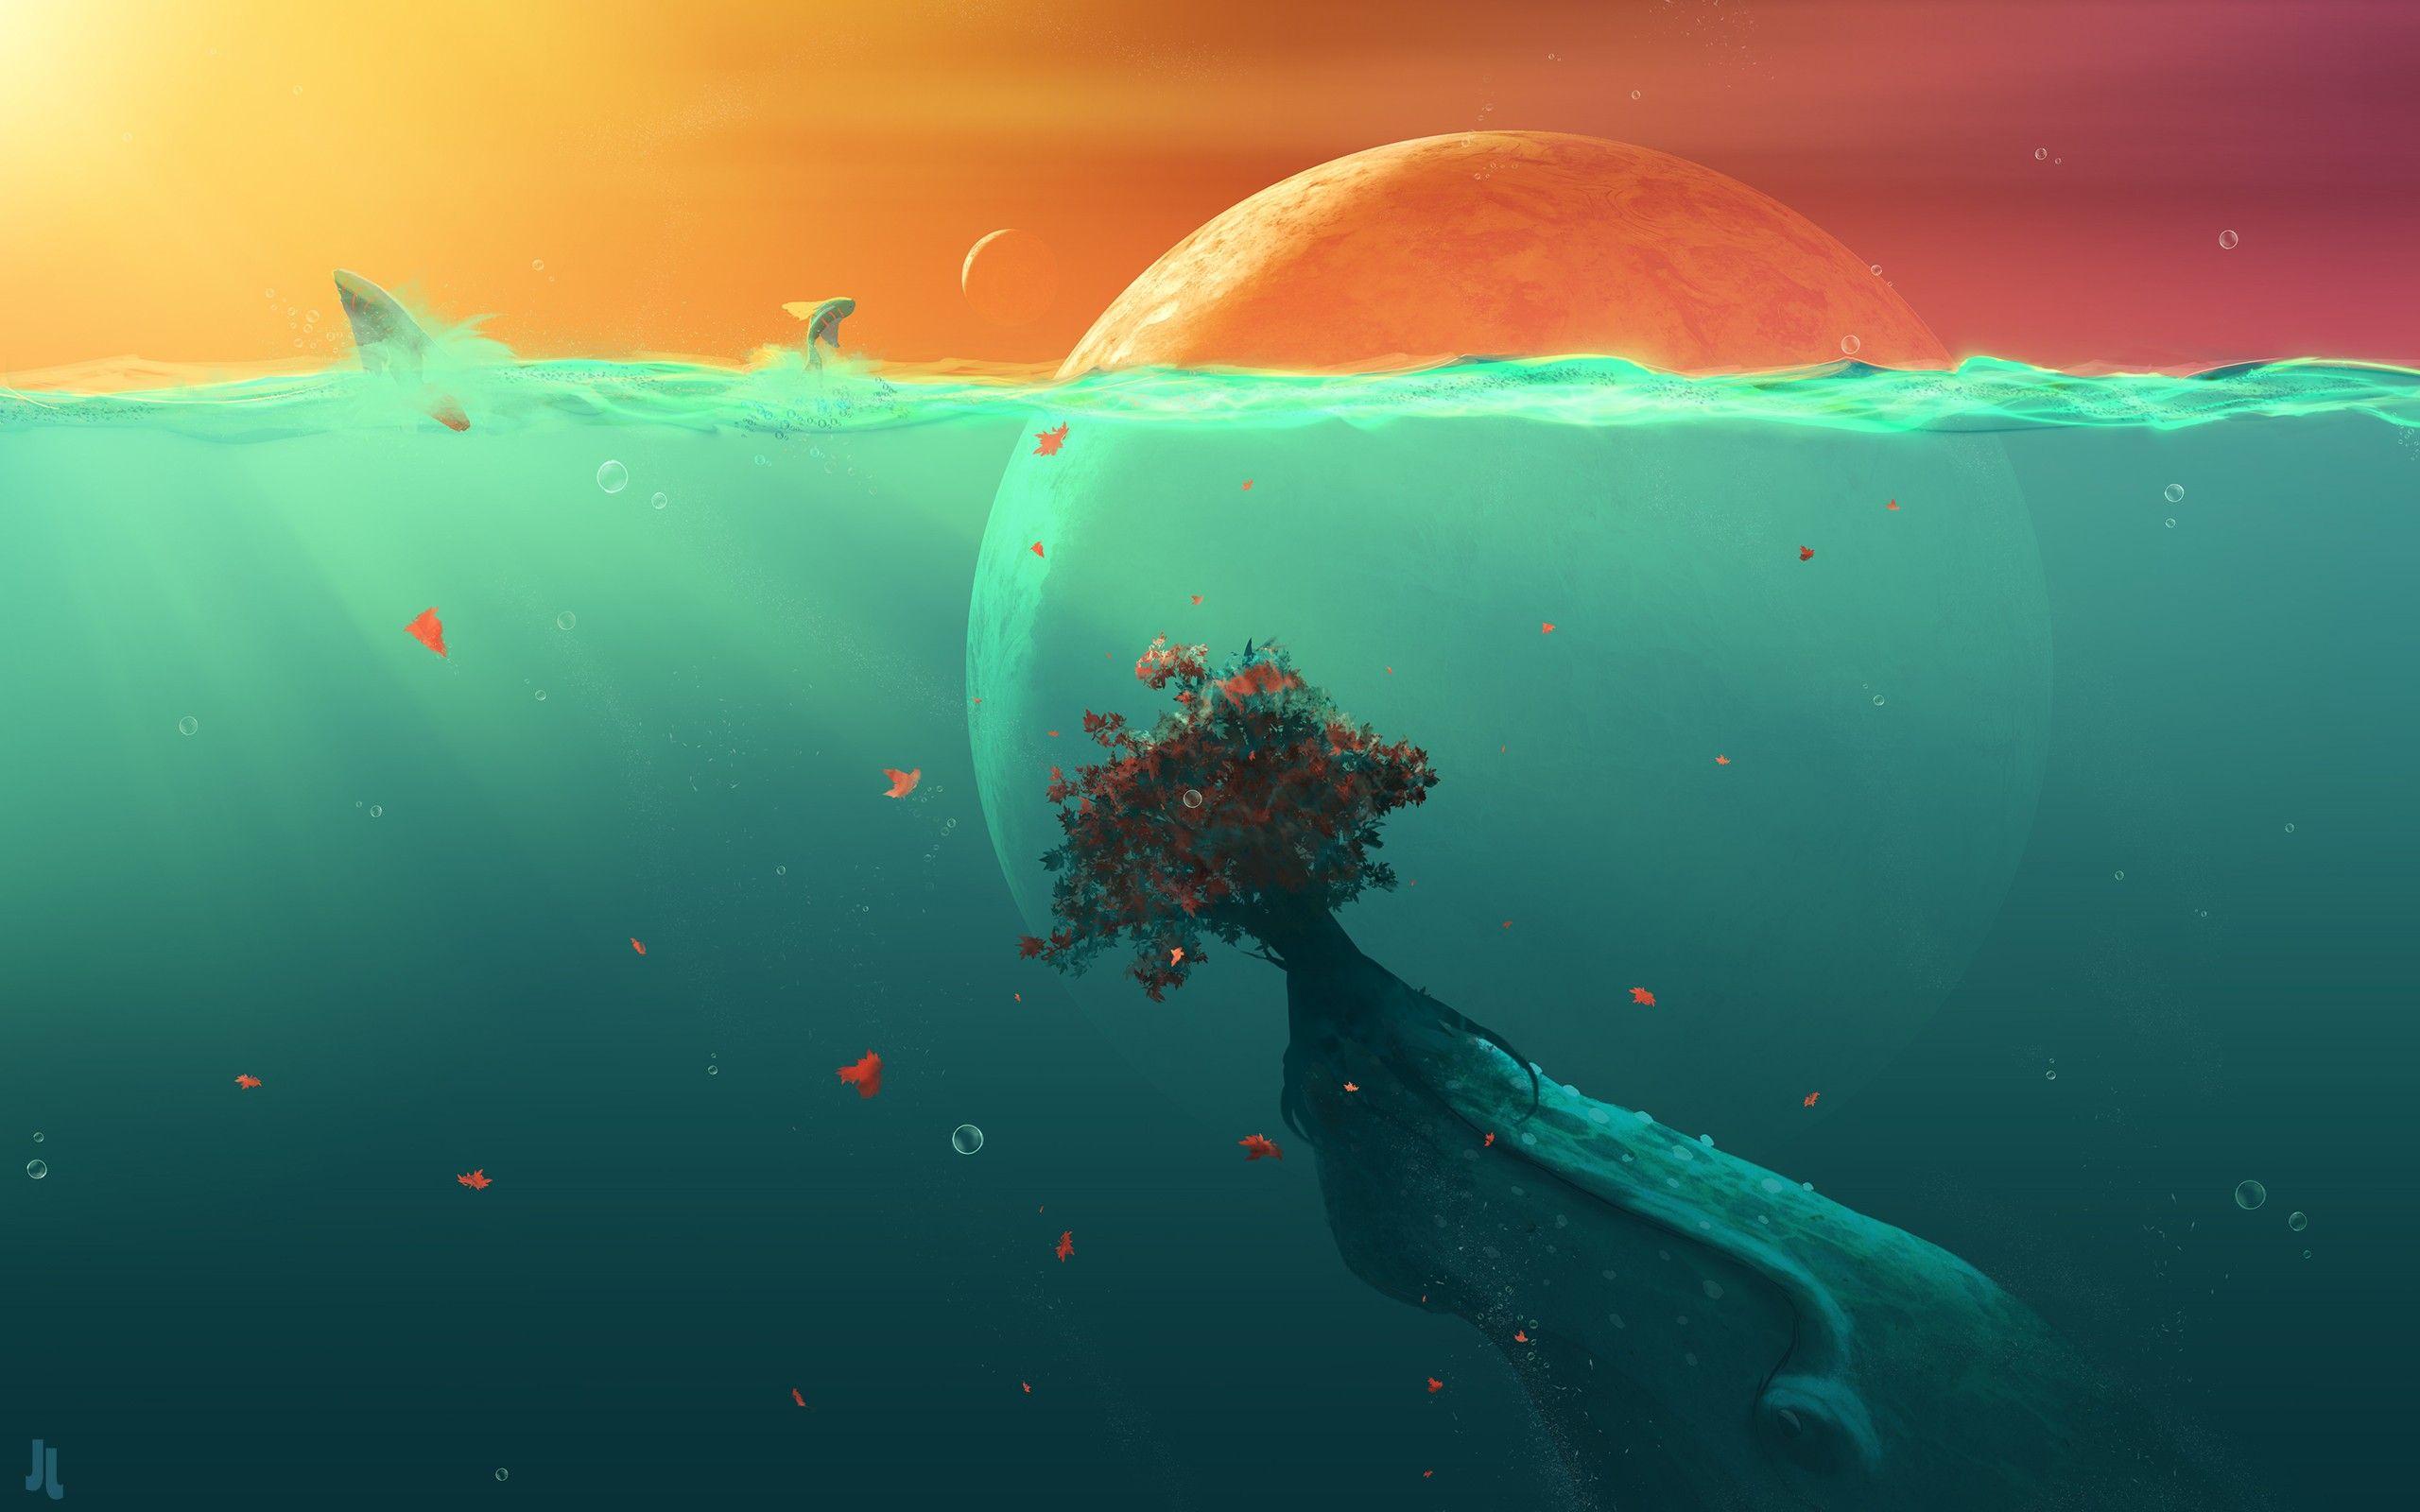 Deep Ocean Planet Fish, HD Digital Universe, 4k Wallpaper, Image